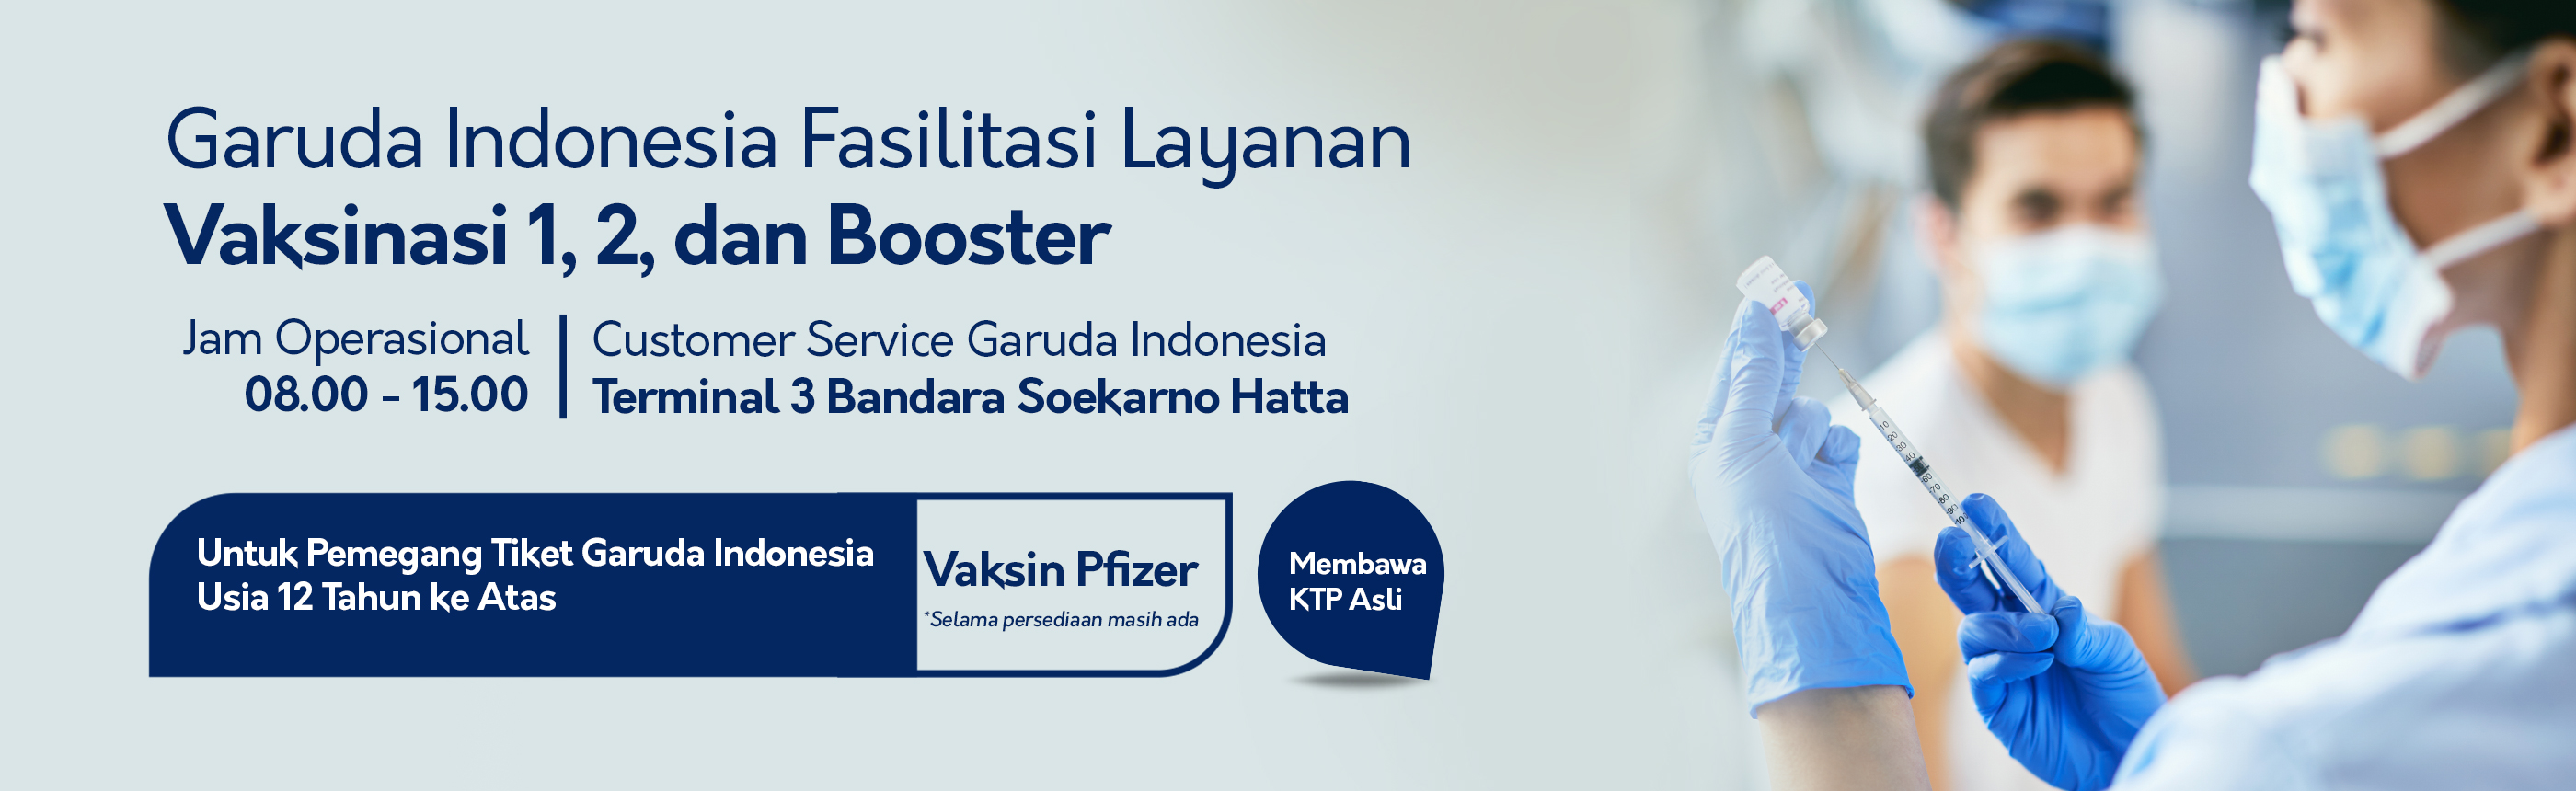 Garuda Indonesia Fasilitasi Layanan Vaksinasi 1, 2, dan Booster